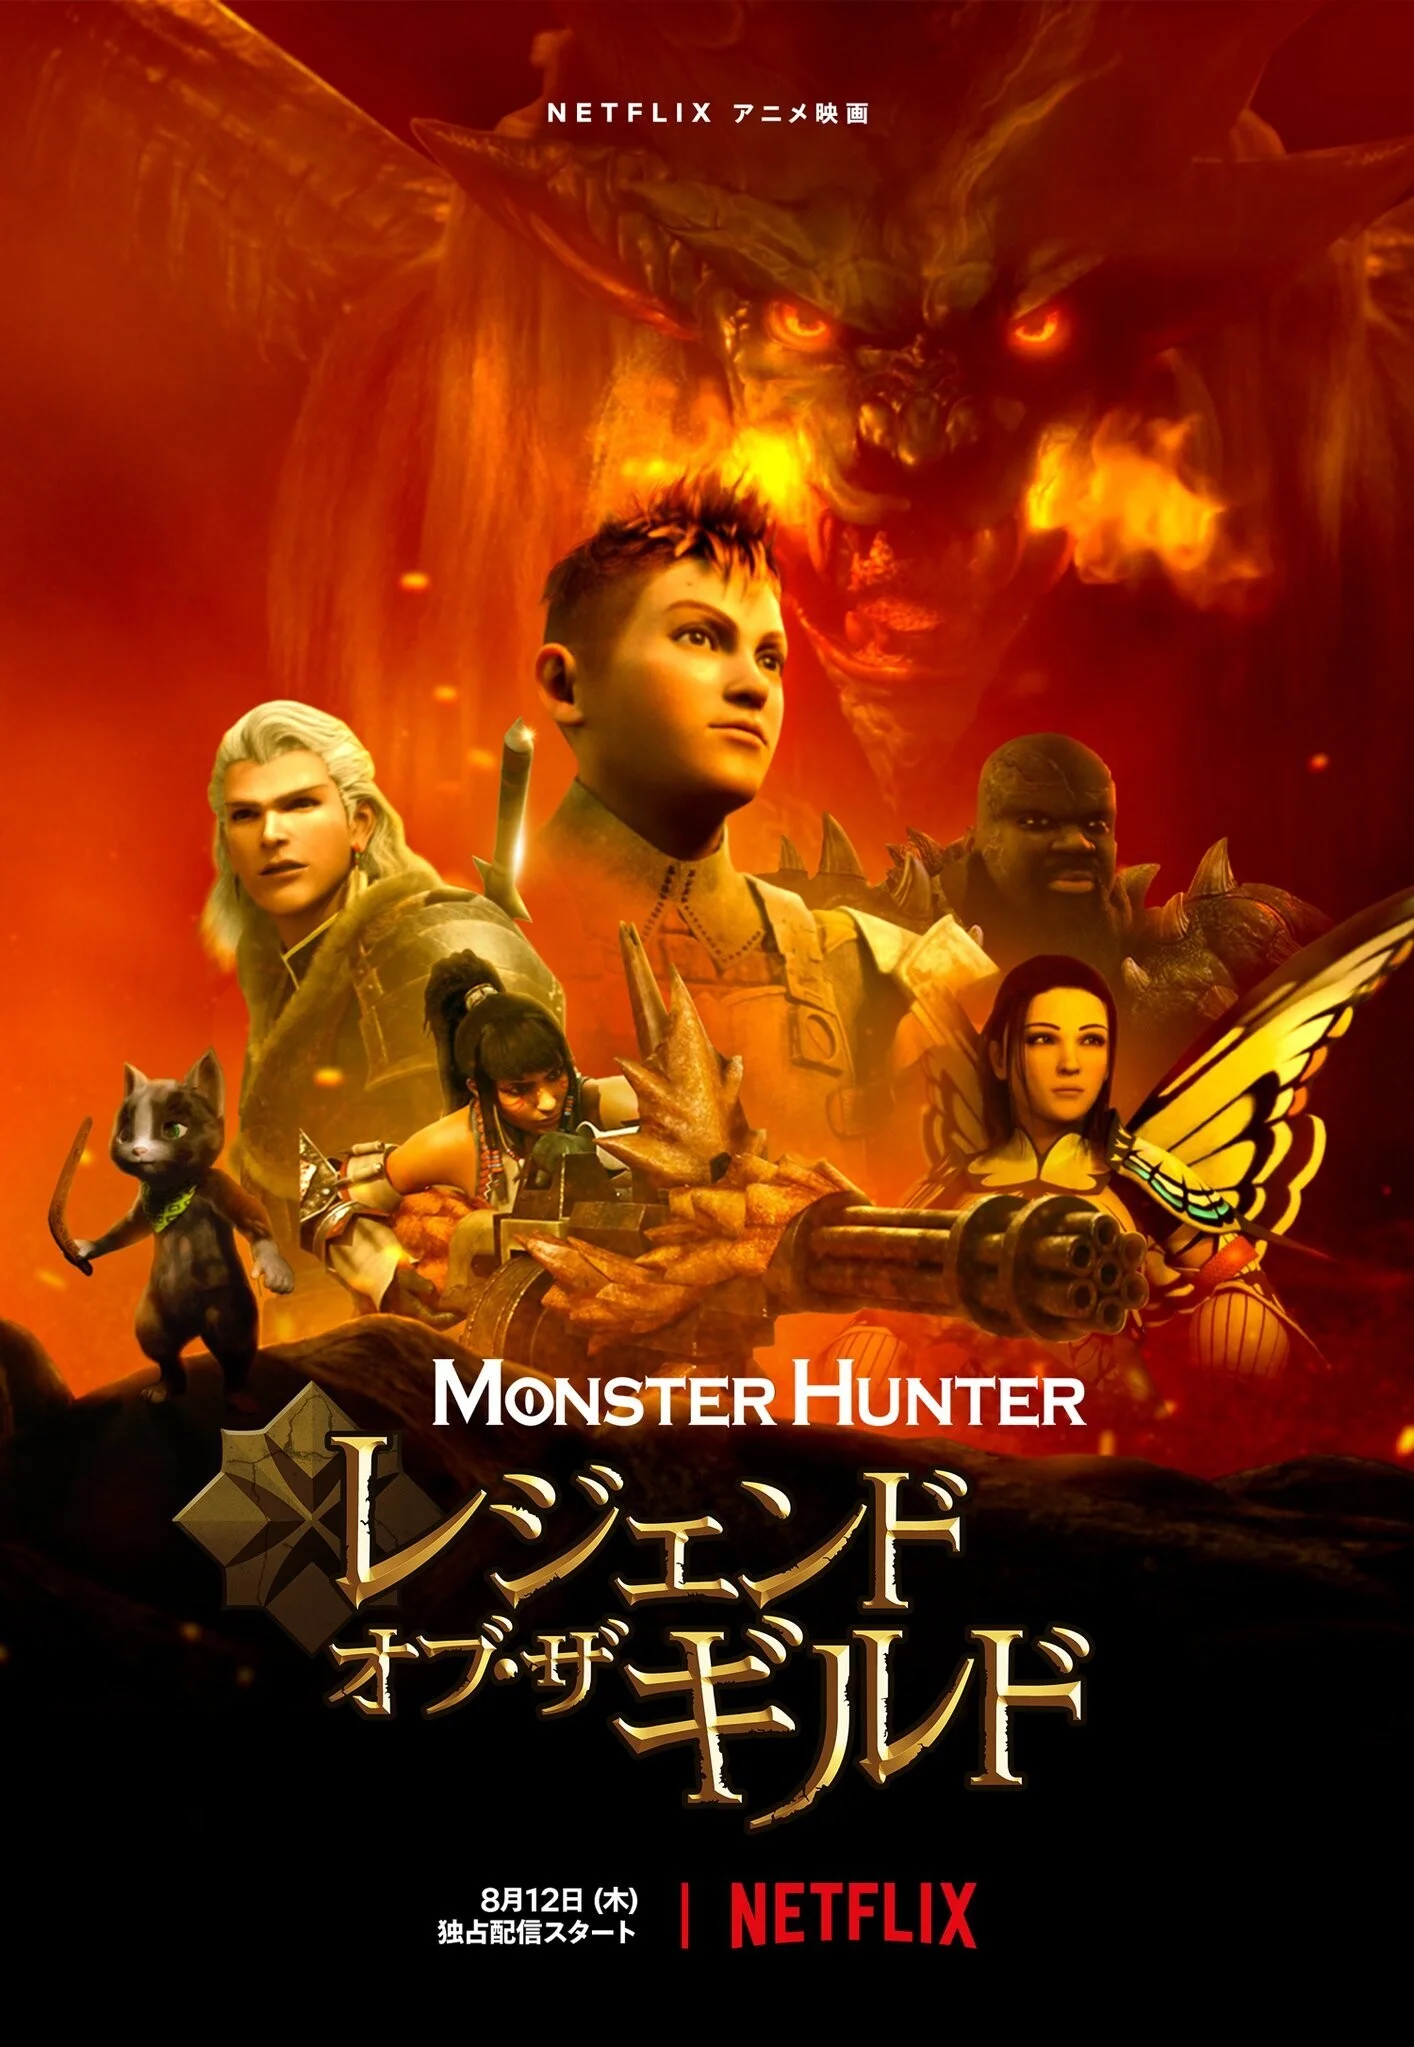 Netflix выпустил трейлер и постер мультфильма по Monster Hunter